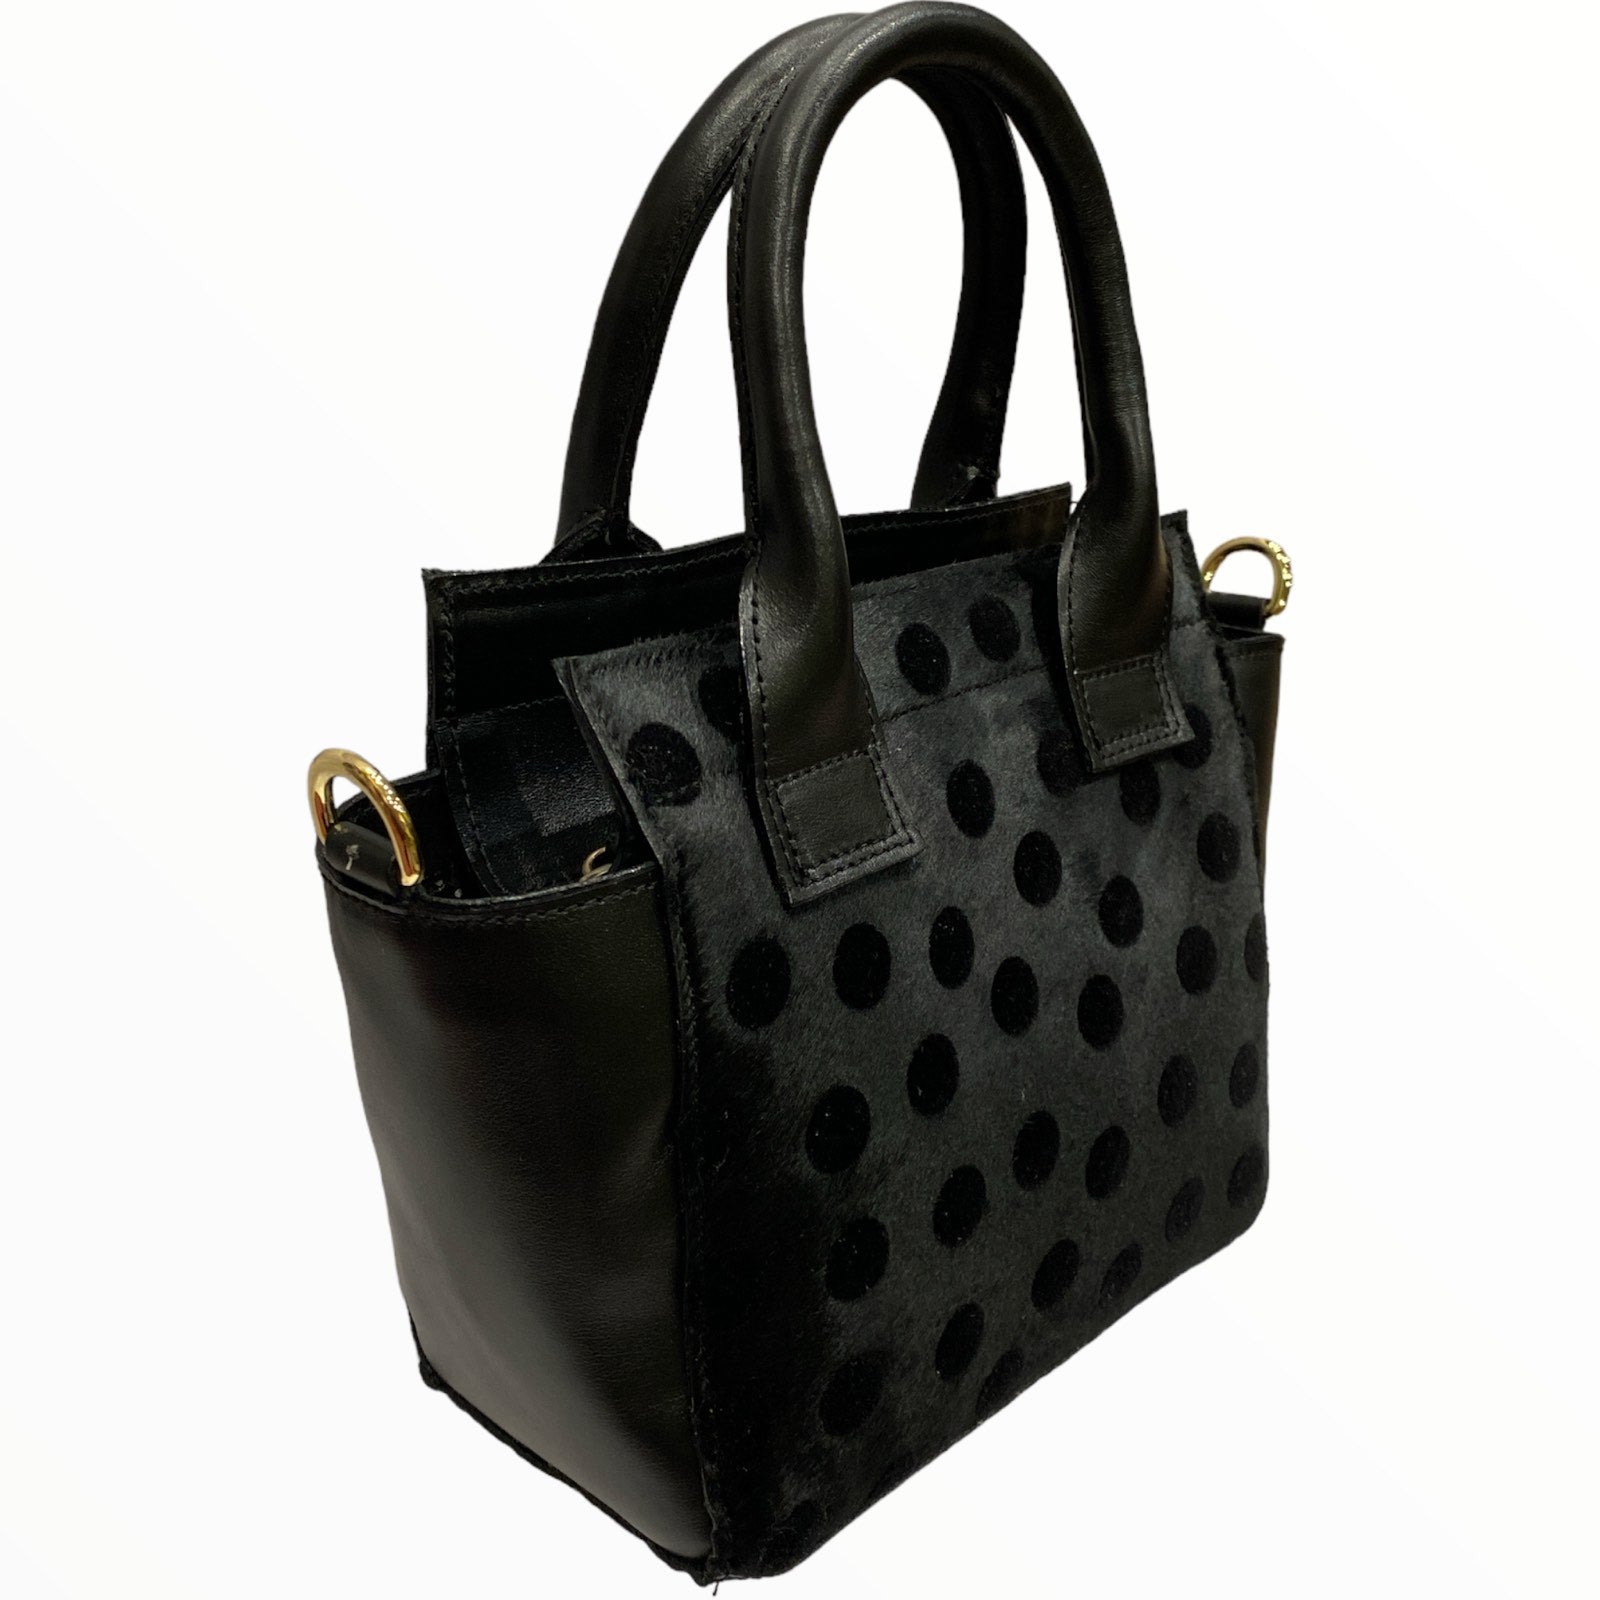 Gina mini. Black polka dots calf-hair leather tote bag